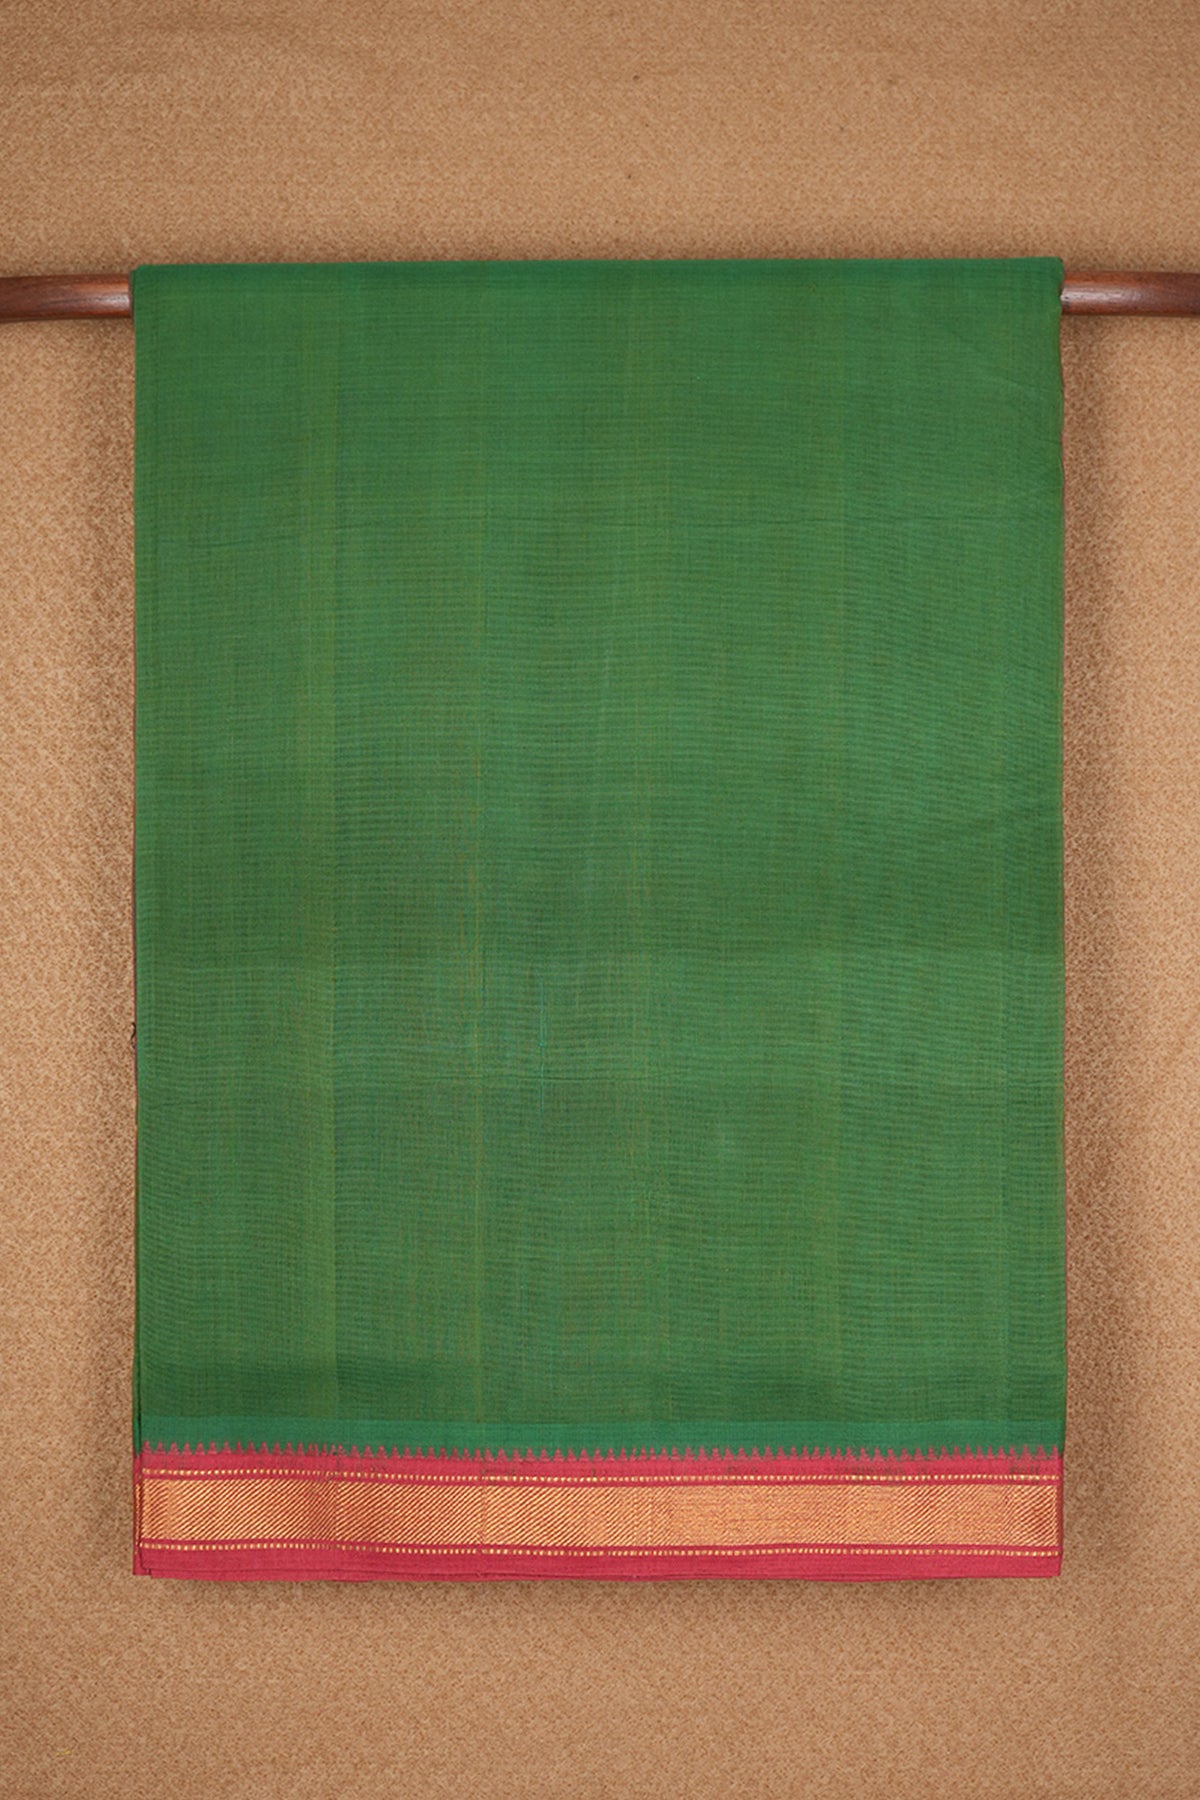 Twill Weave Zari Border Fern Green Mangalagiri Cotton Saree